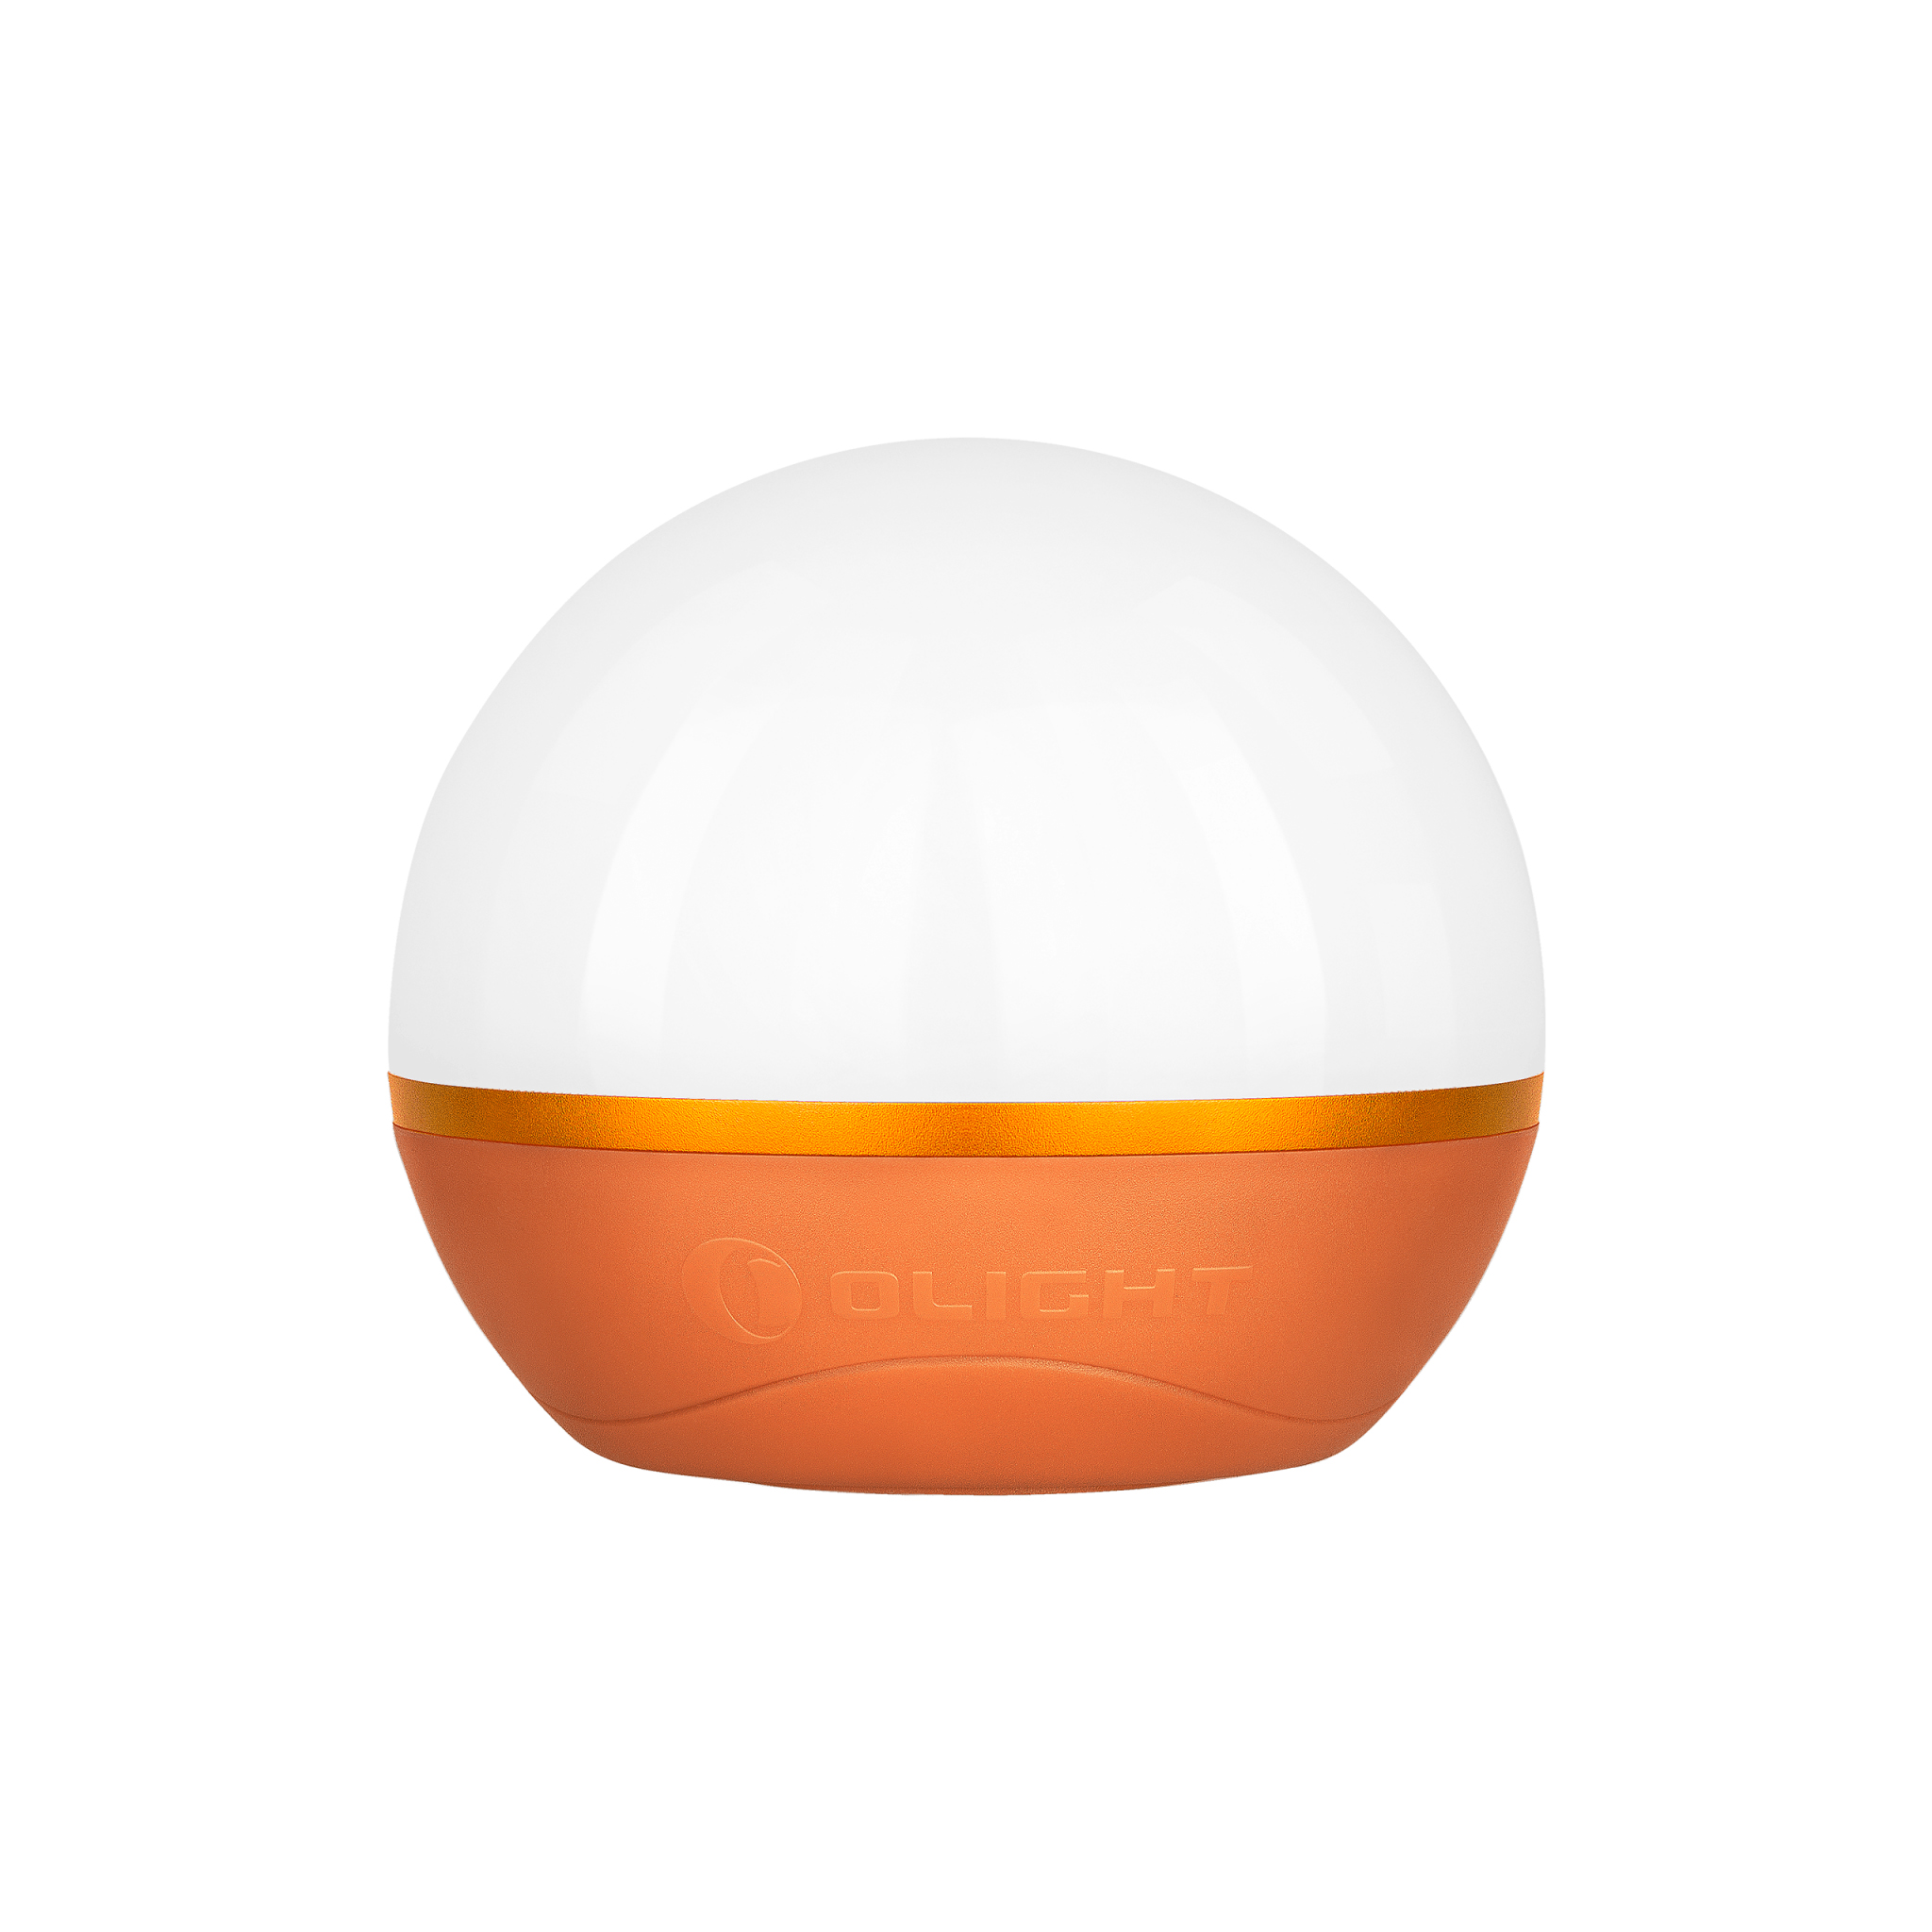 LED-lykta Olight Obulb Pro, 240 lm, Orange